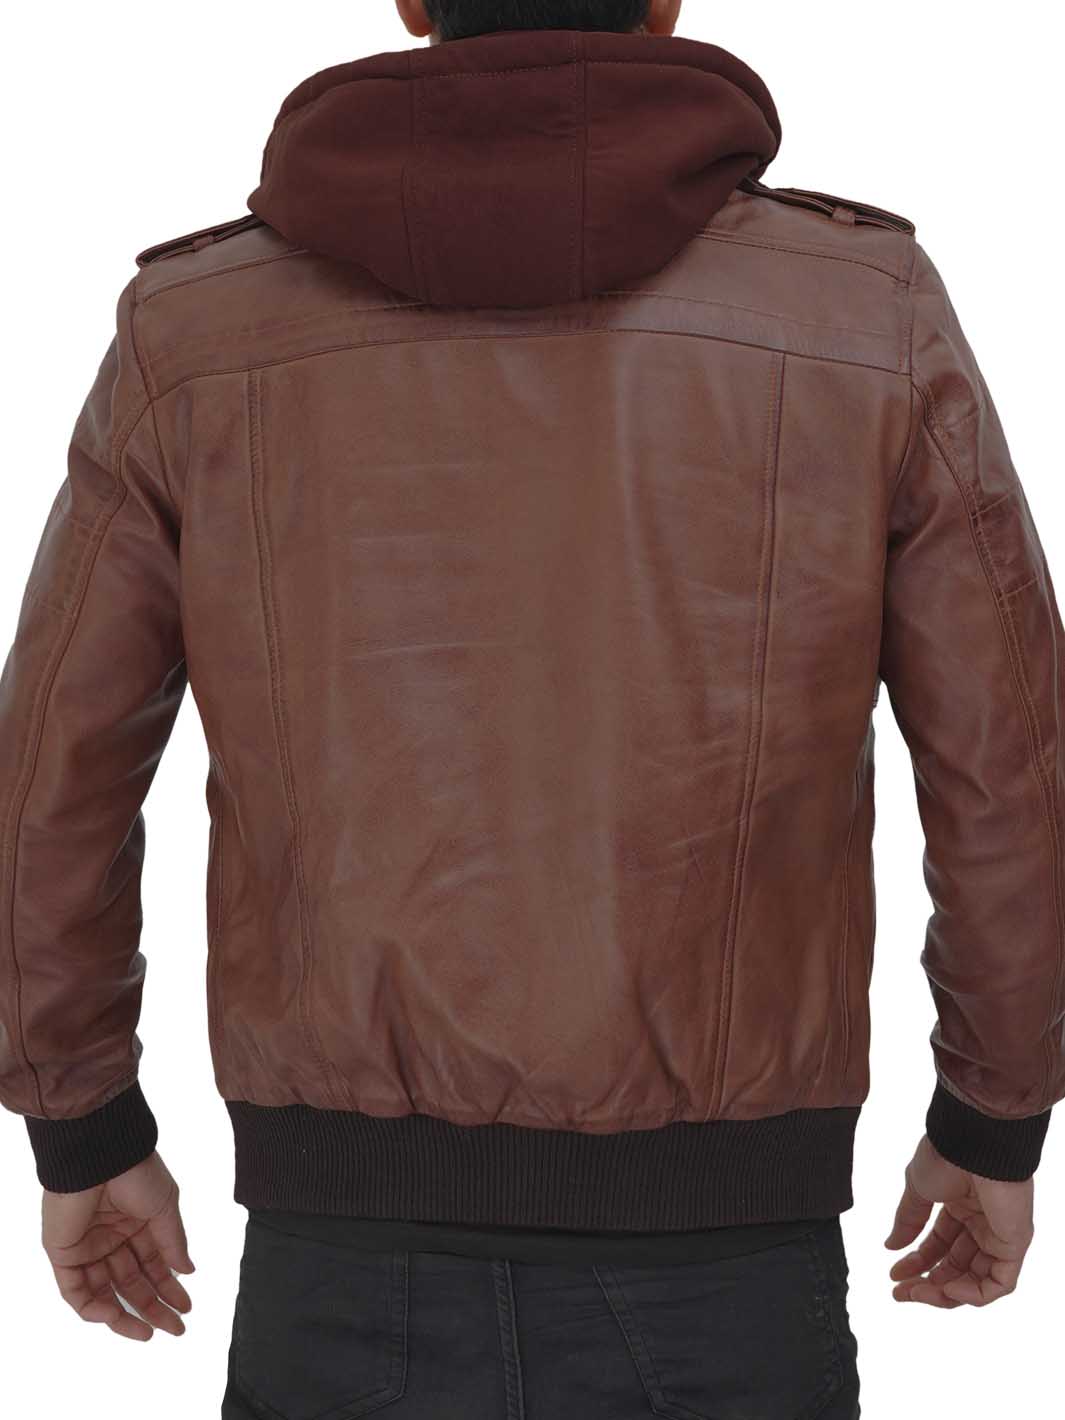 Leather Bomber Jacket Mens | Shop Stylish Jackets | Decrum